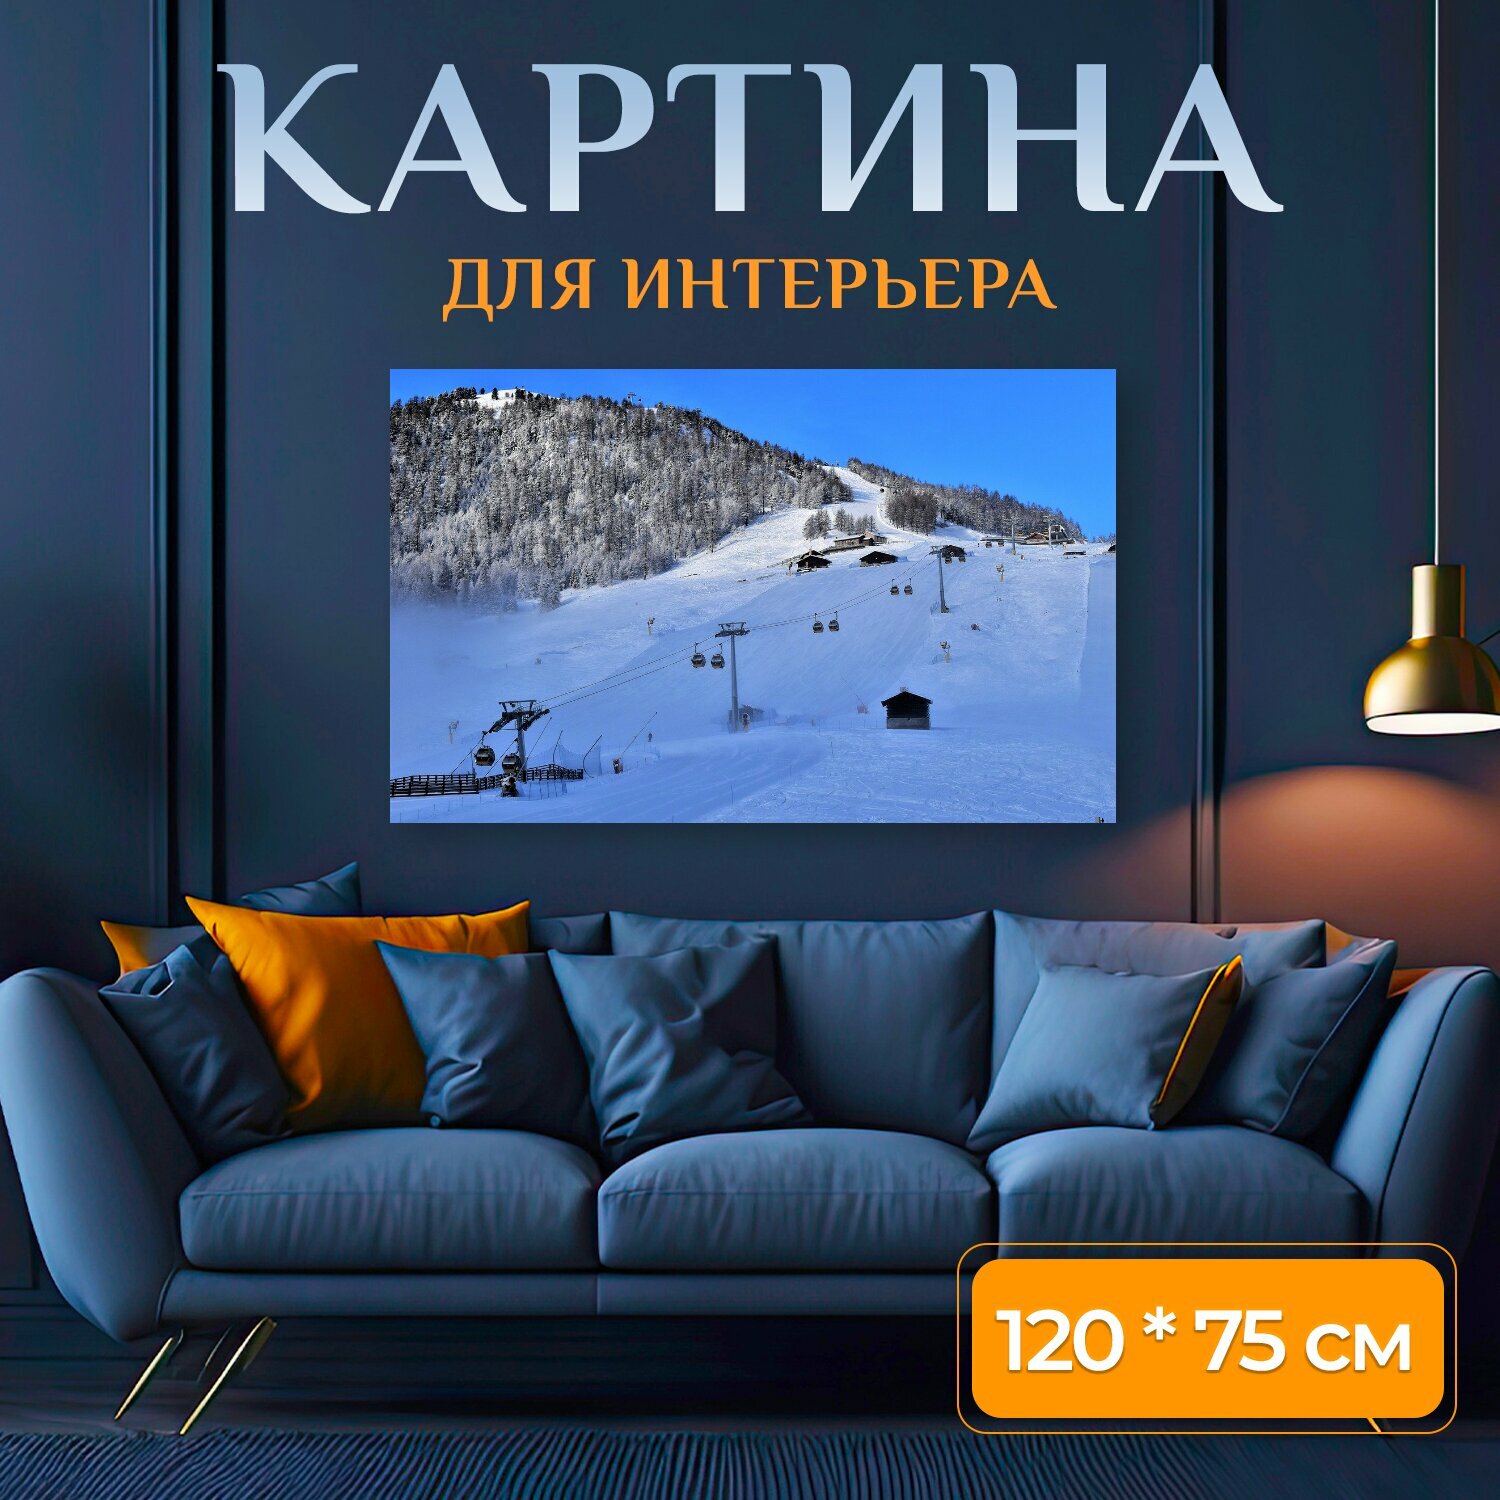 Картина на холсте "Лыжный склон, горнолыжный подъемник, кататься на лыжах" на подрамнике 120х75 см. для интерьера